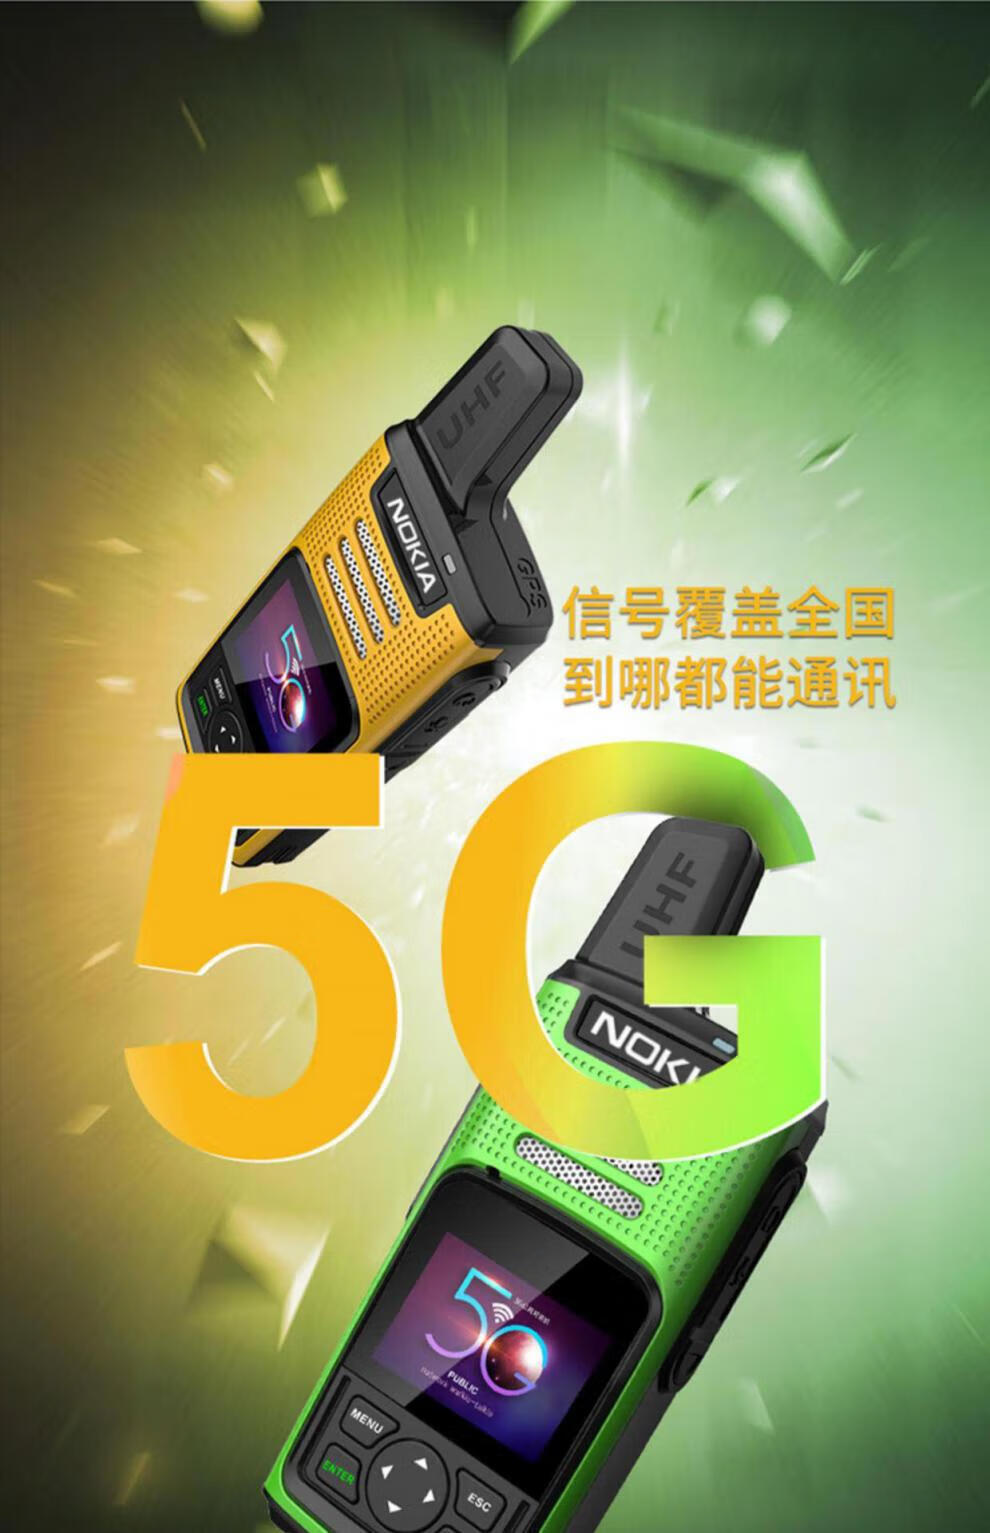 5G时代不可或缺的基建利器：诺基亚引领5G网络革新  第1张